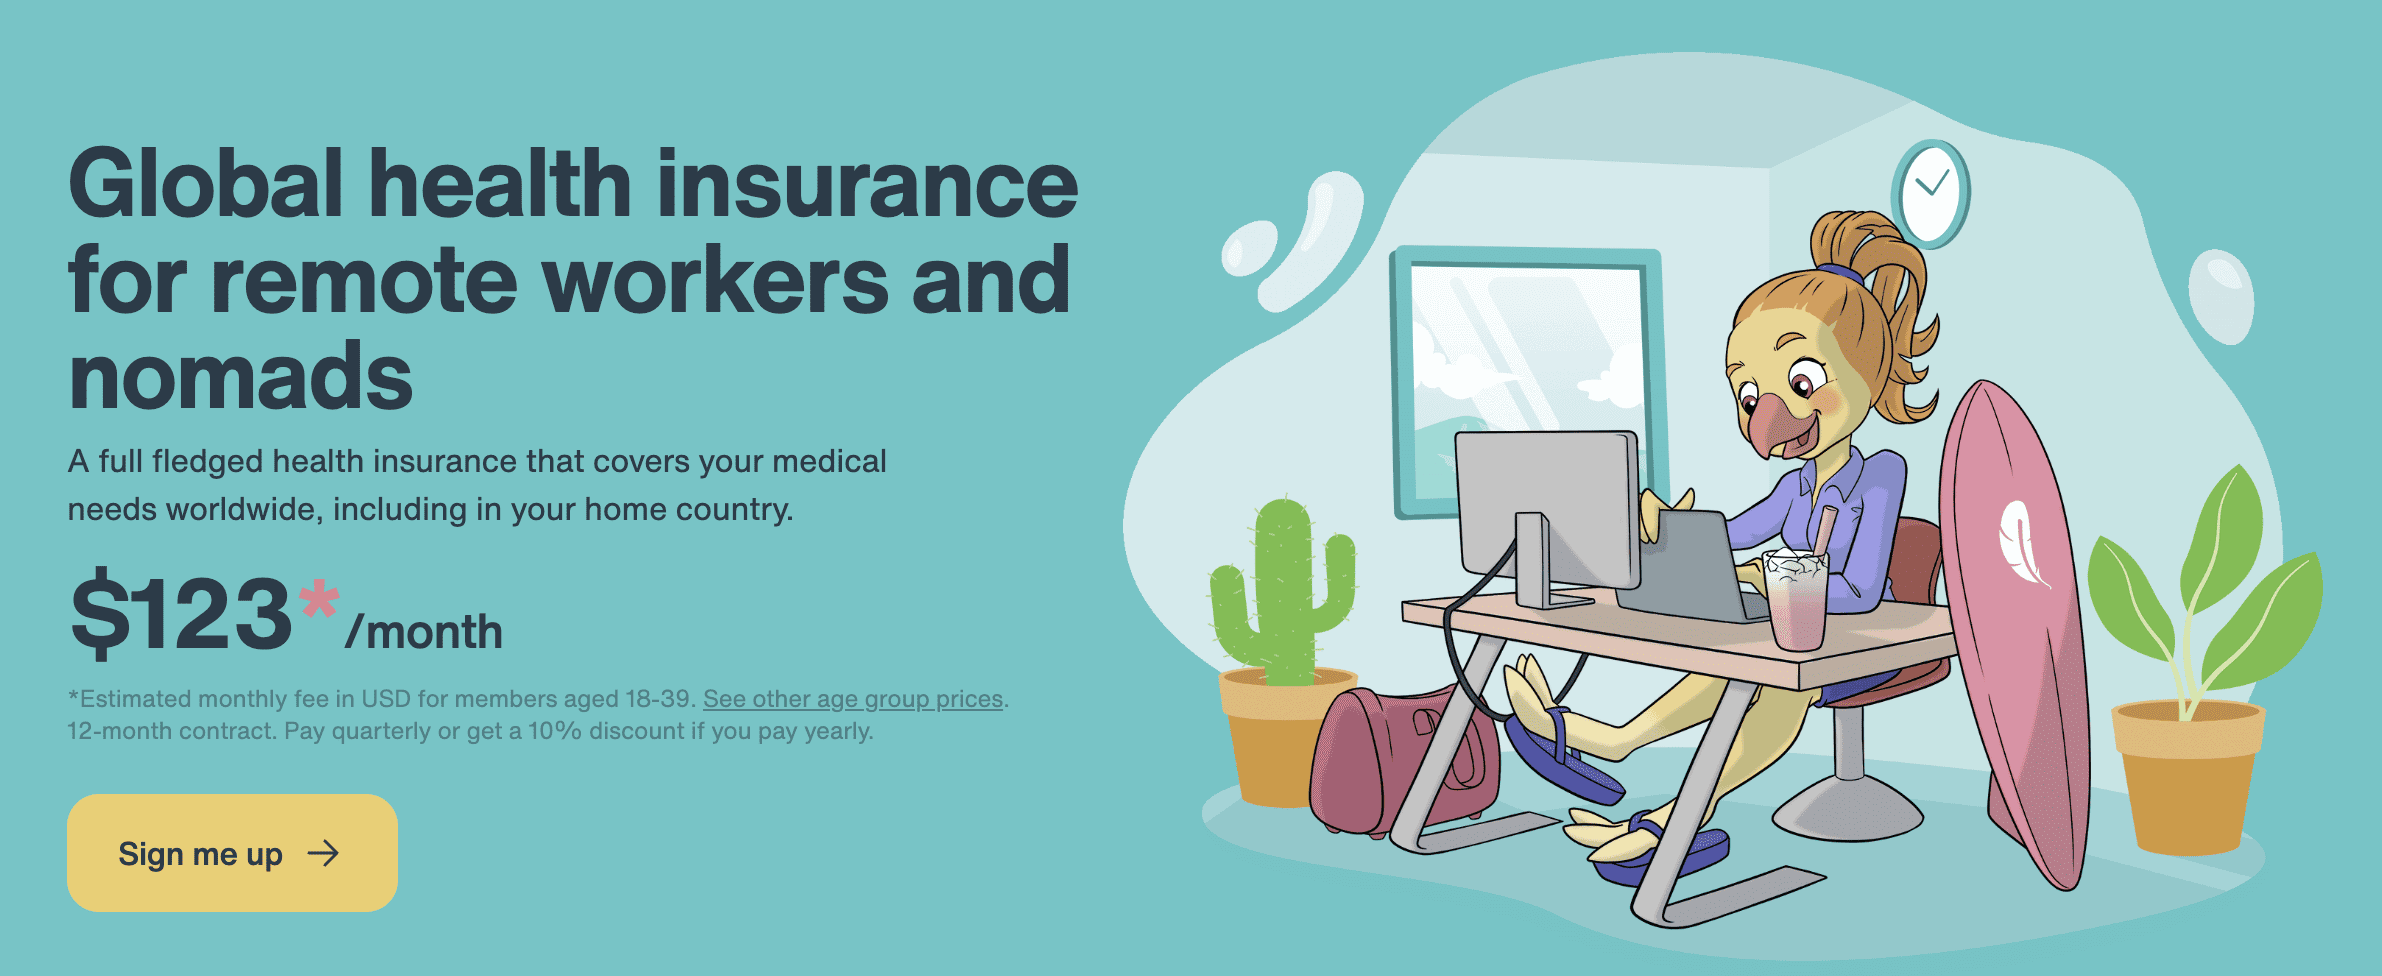 Nomad Health ScreenShot da companhia de seguros de segurança